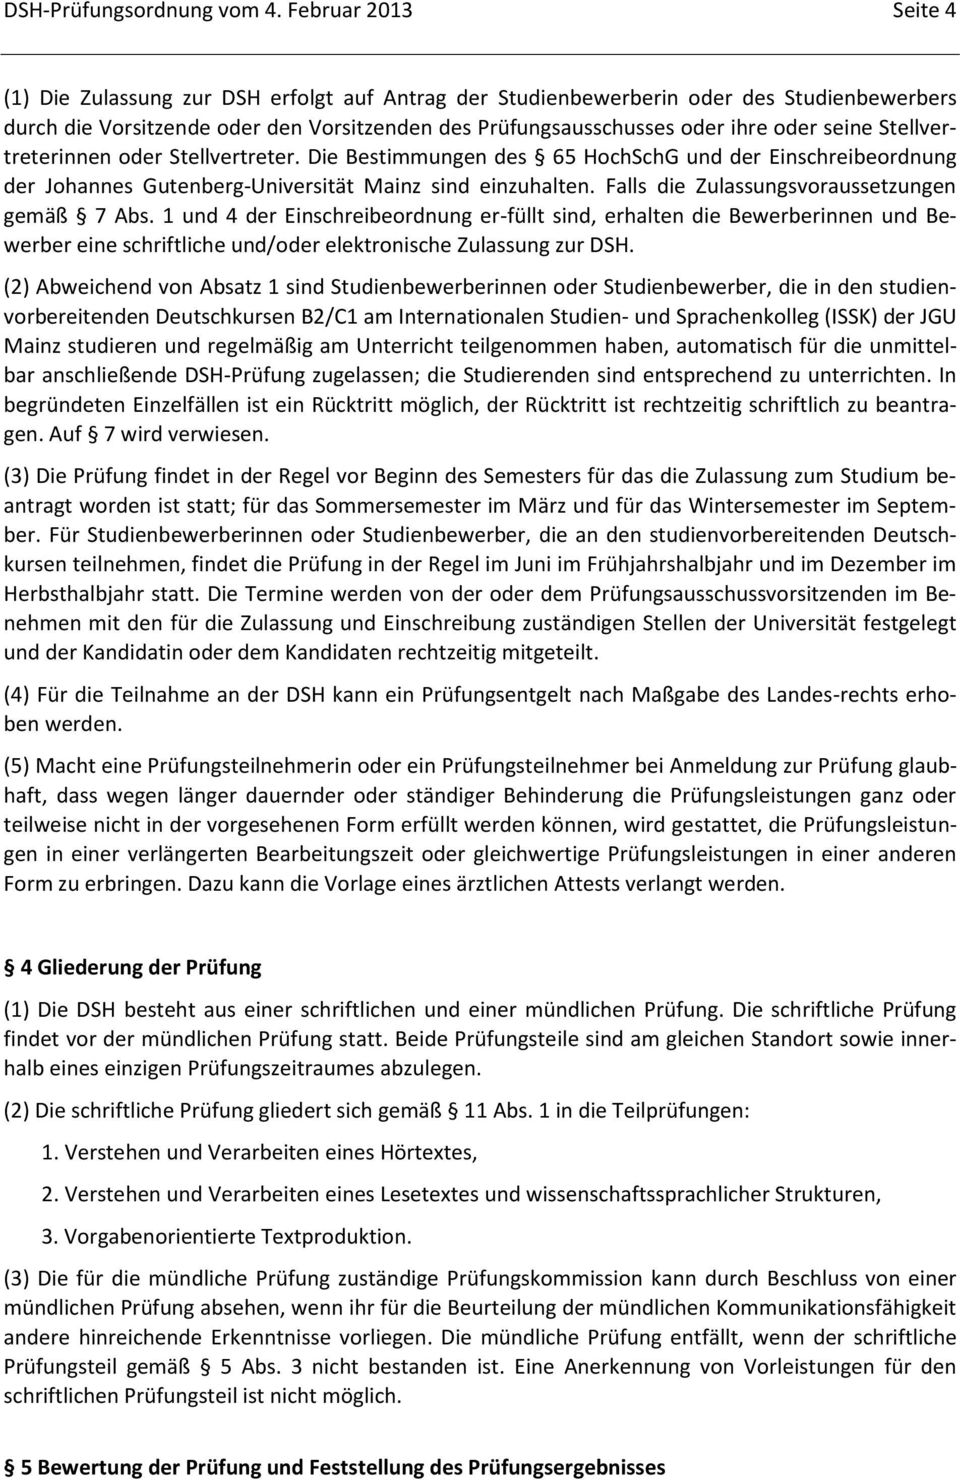 seine Stellvertreterinnen oder Stellvertreter. Die Bestimmungen des 65 HochSchG und der Einschreibeordnung der Johannes Gutenberg-Universität Mainz sind einzuhalten.